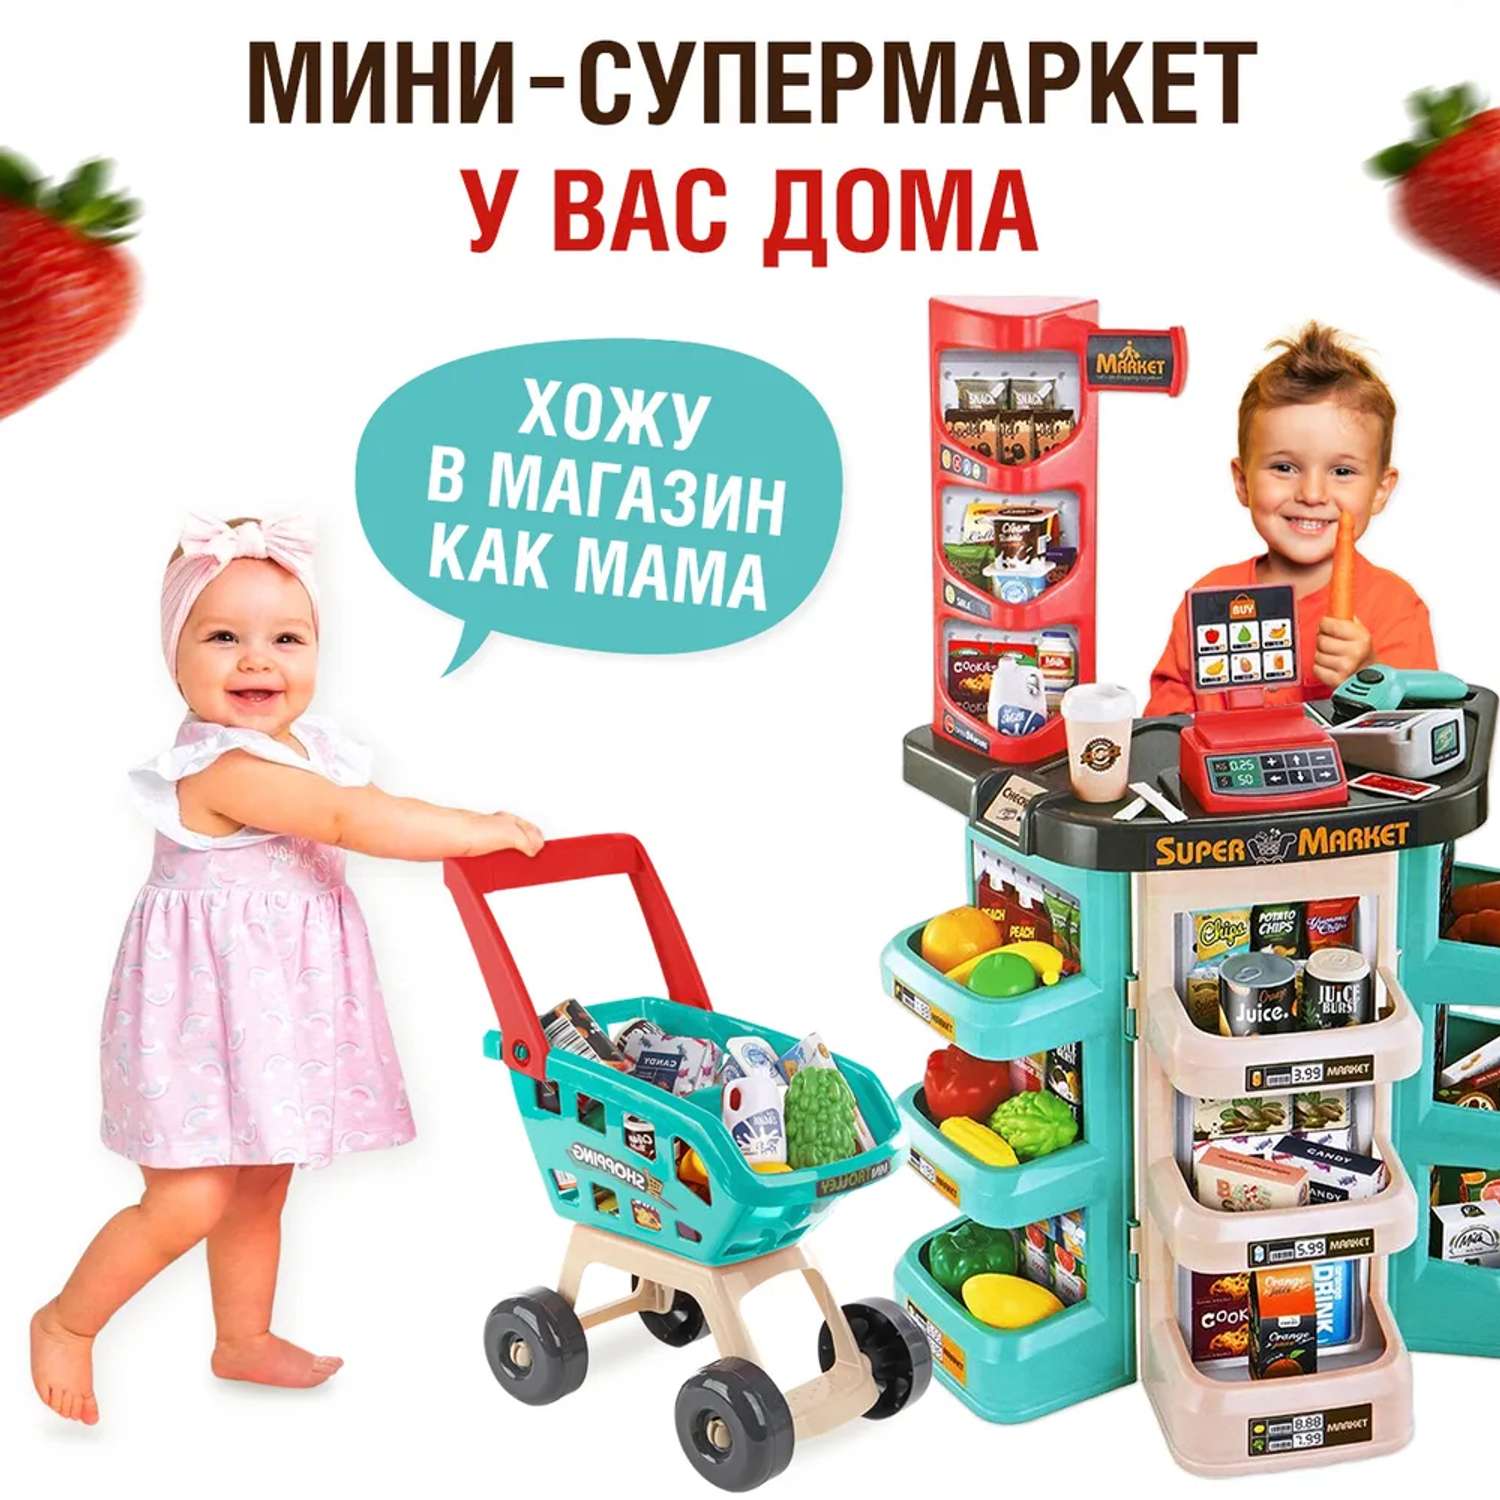 Супермаркет детский FAIRYMARY игрушечный со звуком и светом - фото 4